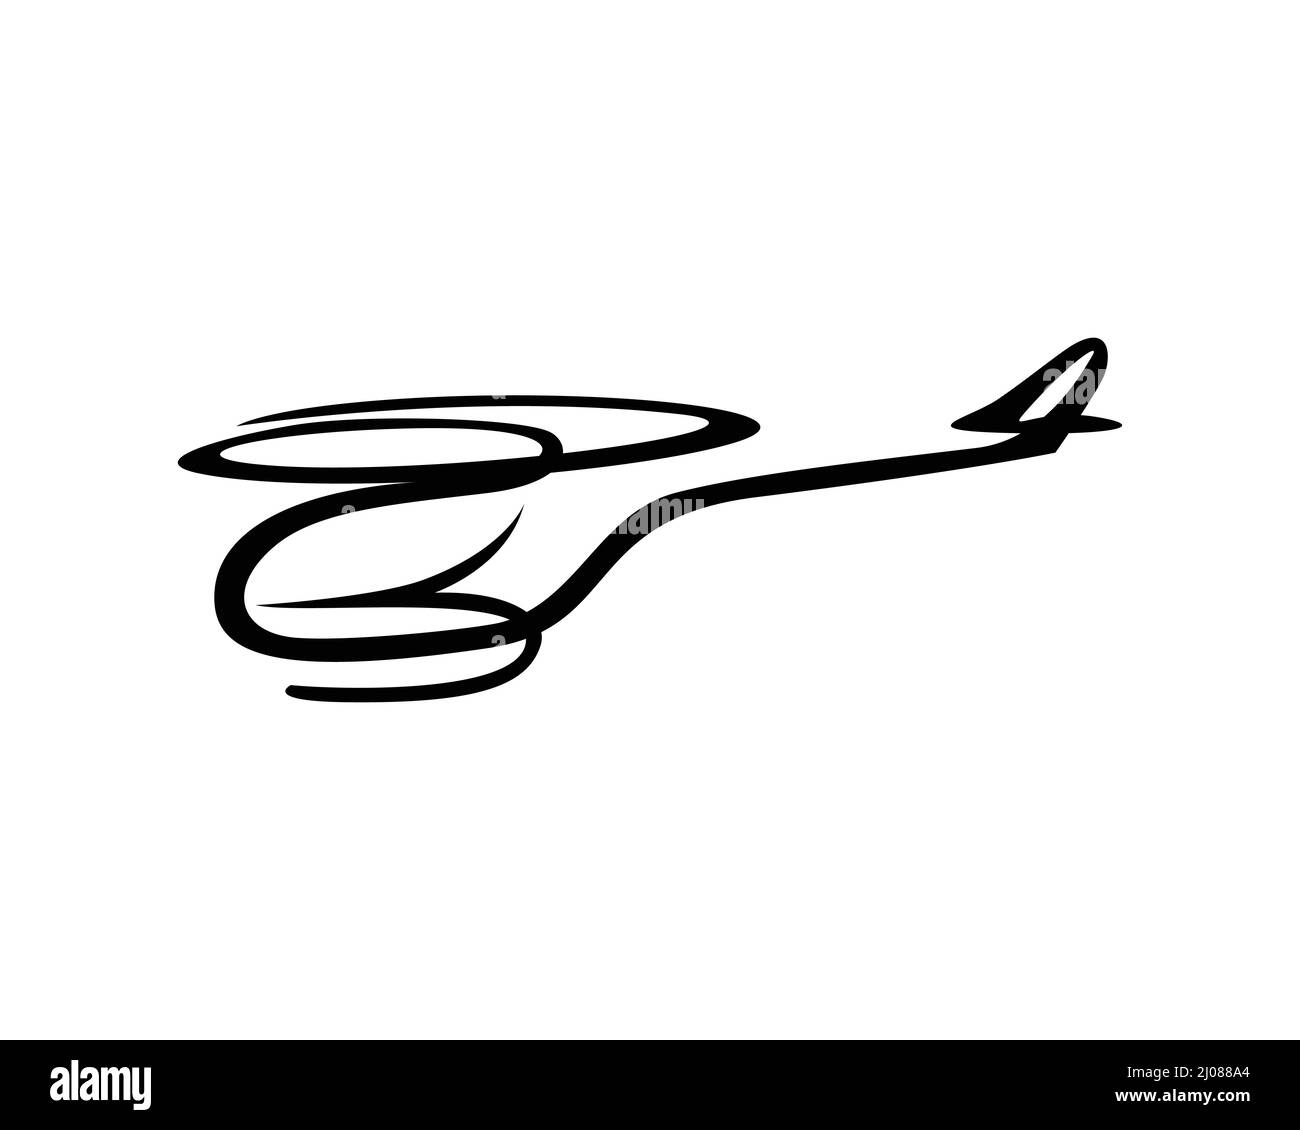 Fliegender Hubschrauber Symbol mit Silhouette Stil Stock Vektor